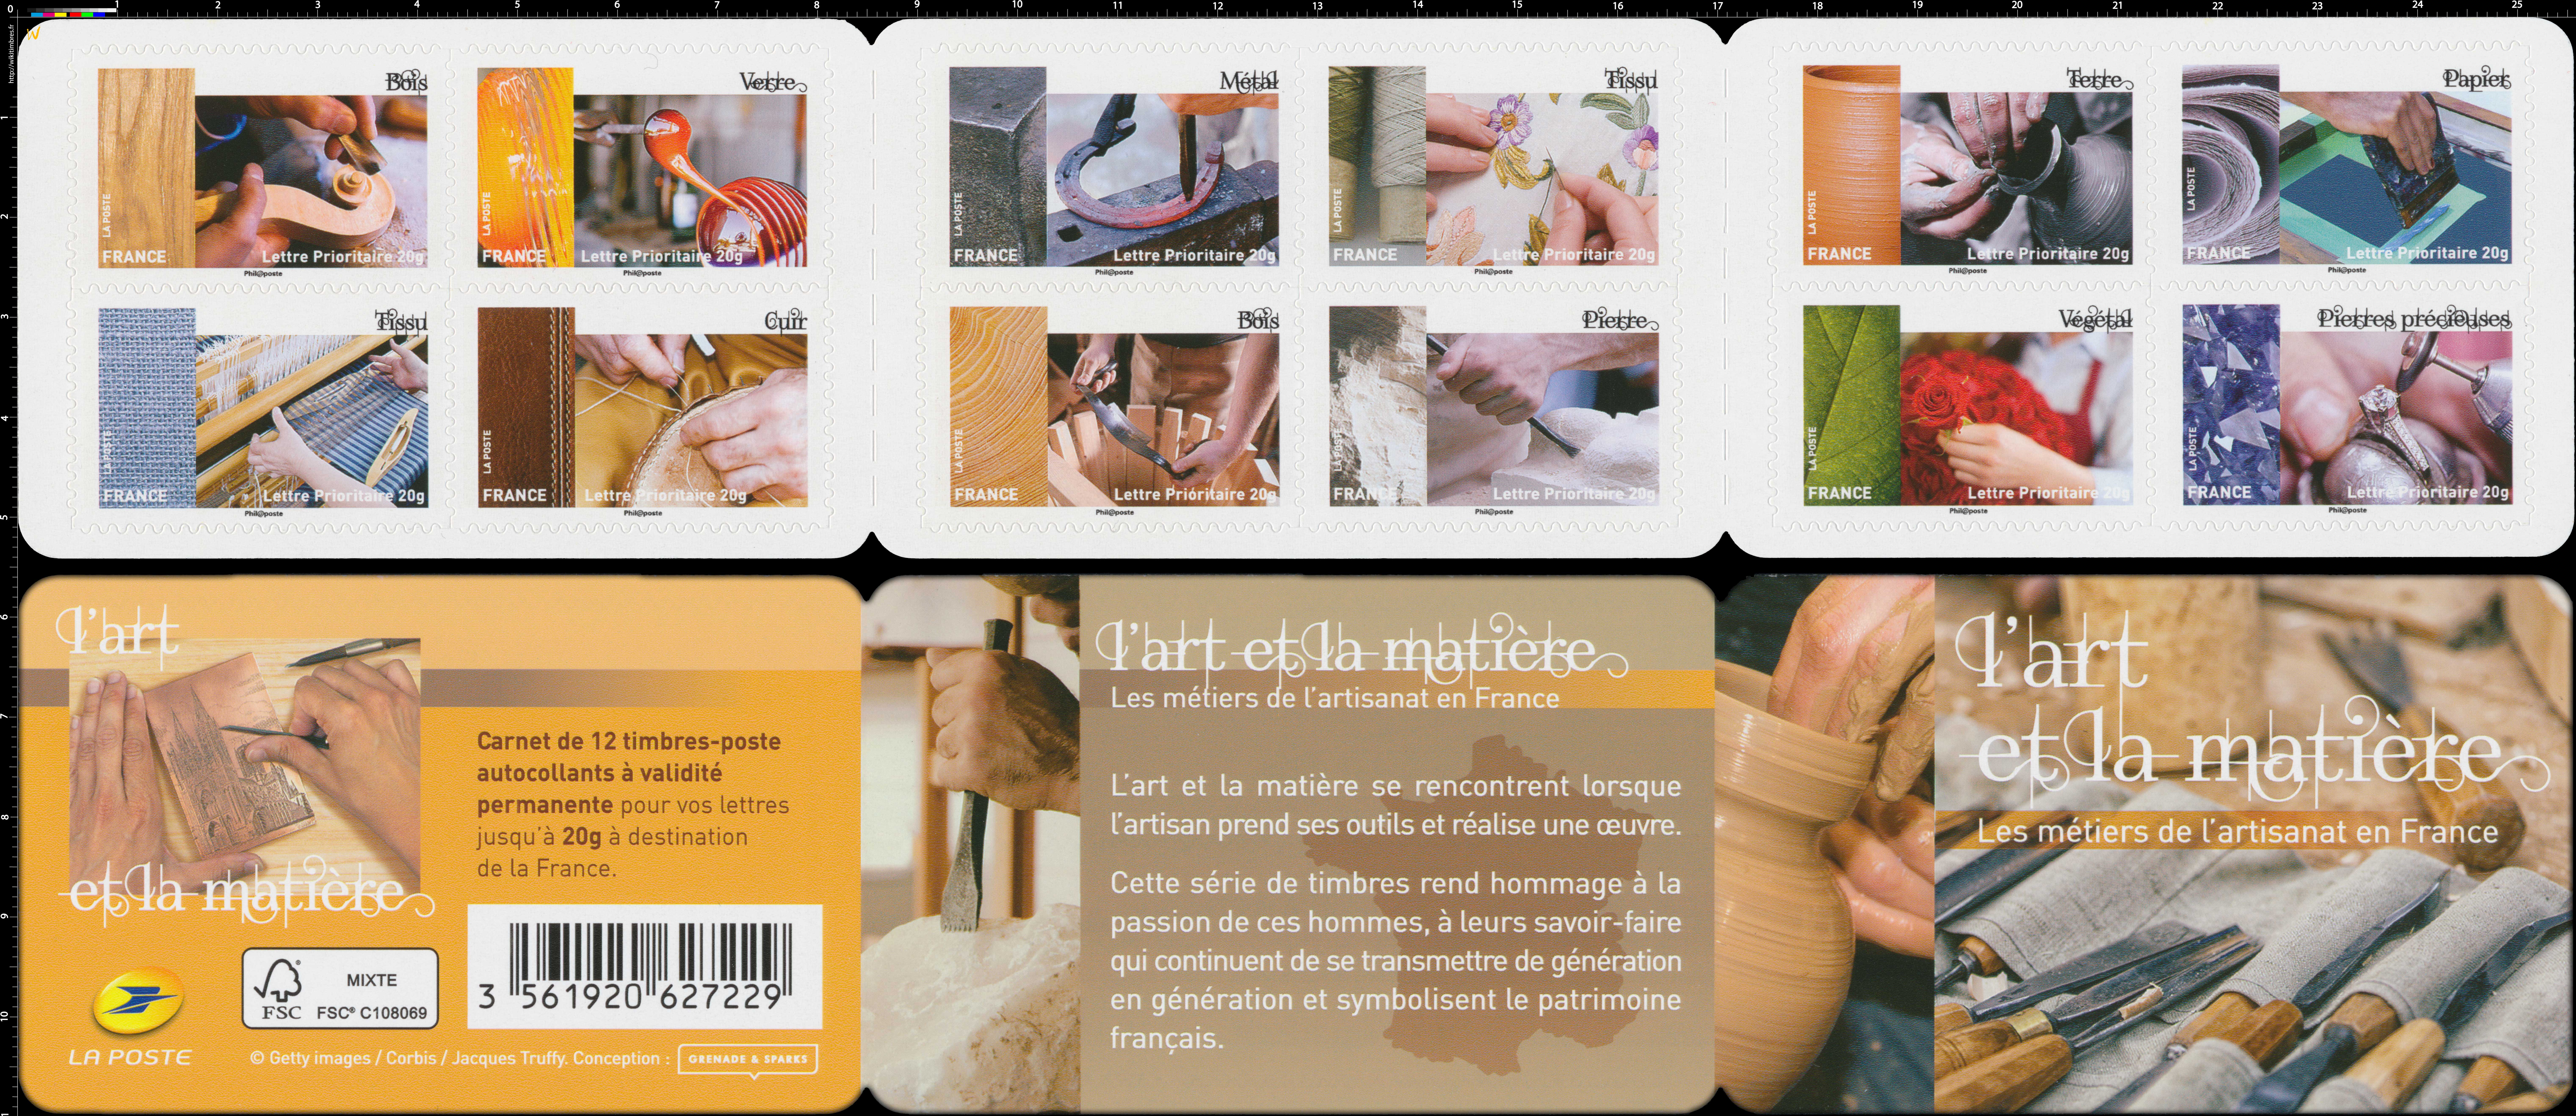 2015 L'art et la matière - Les métiers de l'artisanat en France